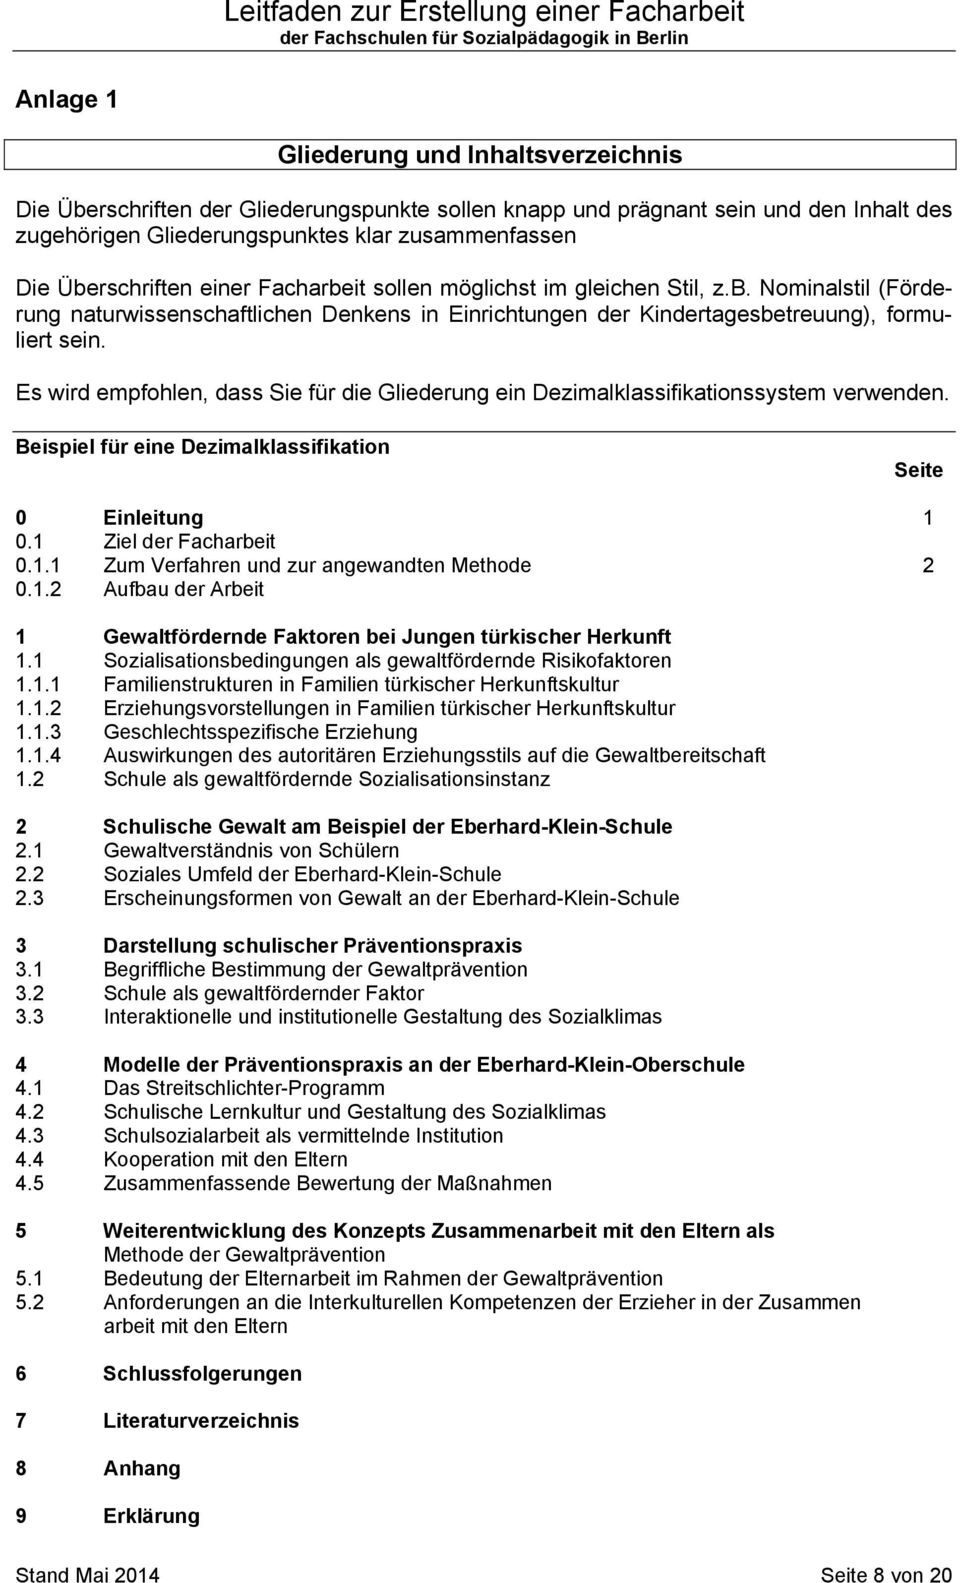 Leitfaden Zur Erstellung Einer Facharbeit Der Fachschulen Fur Sozialpadagogik In Berlin Pdf Free Download